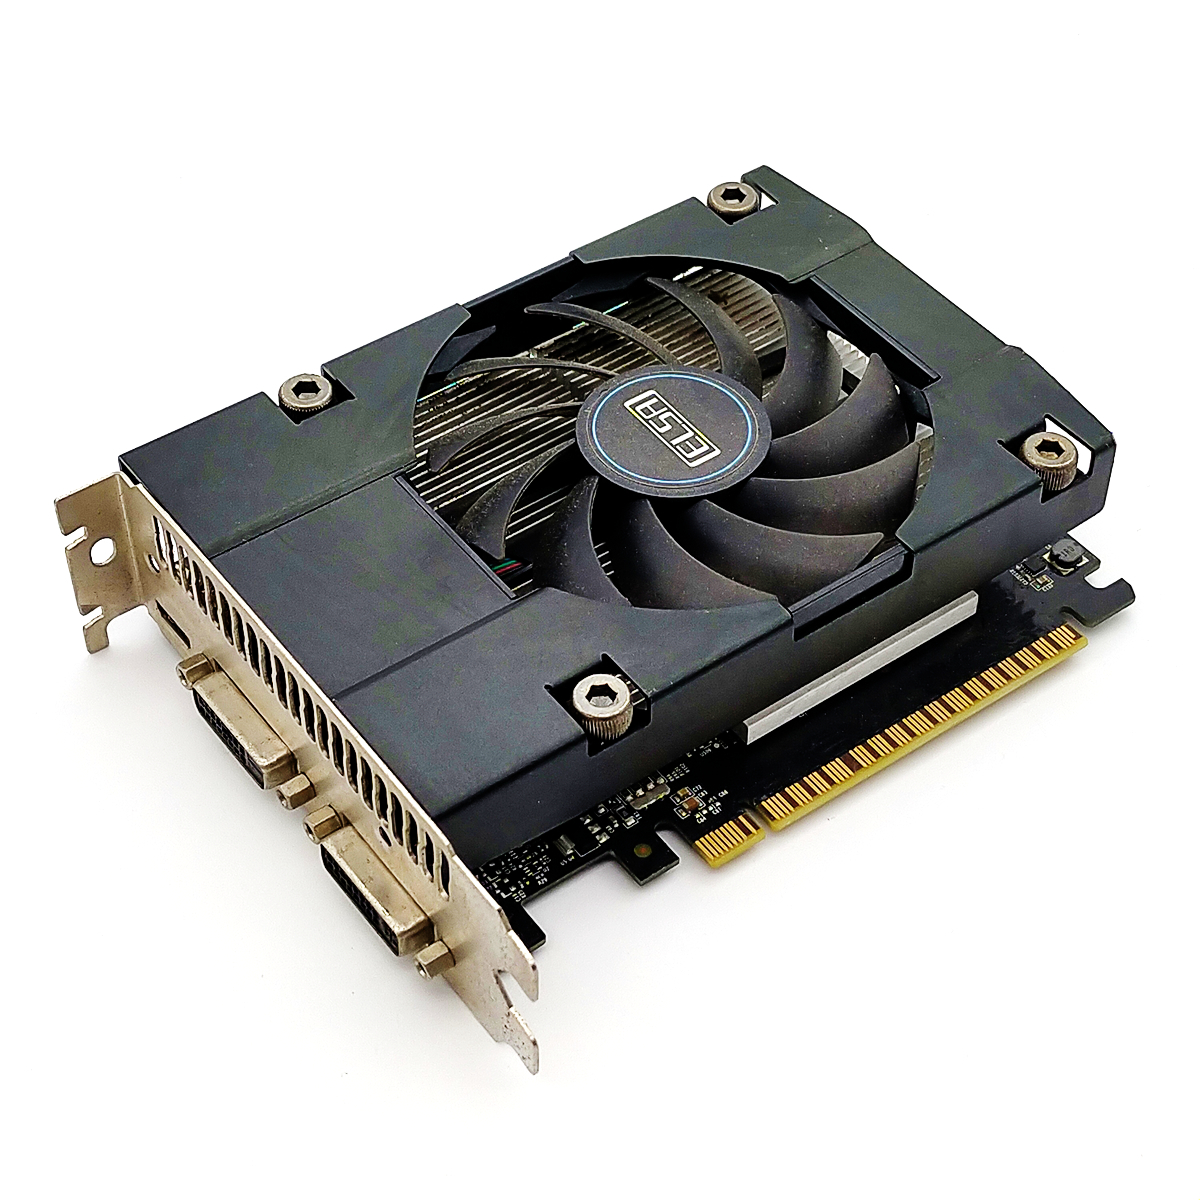 s013 PCパーツ グラボ ビデオカード GPU nVIDIA ELSA GeForce GTX750Ti 2G GDDR5 PCI-Express miniHDMI/DVIx2の画像1